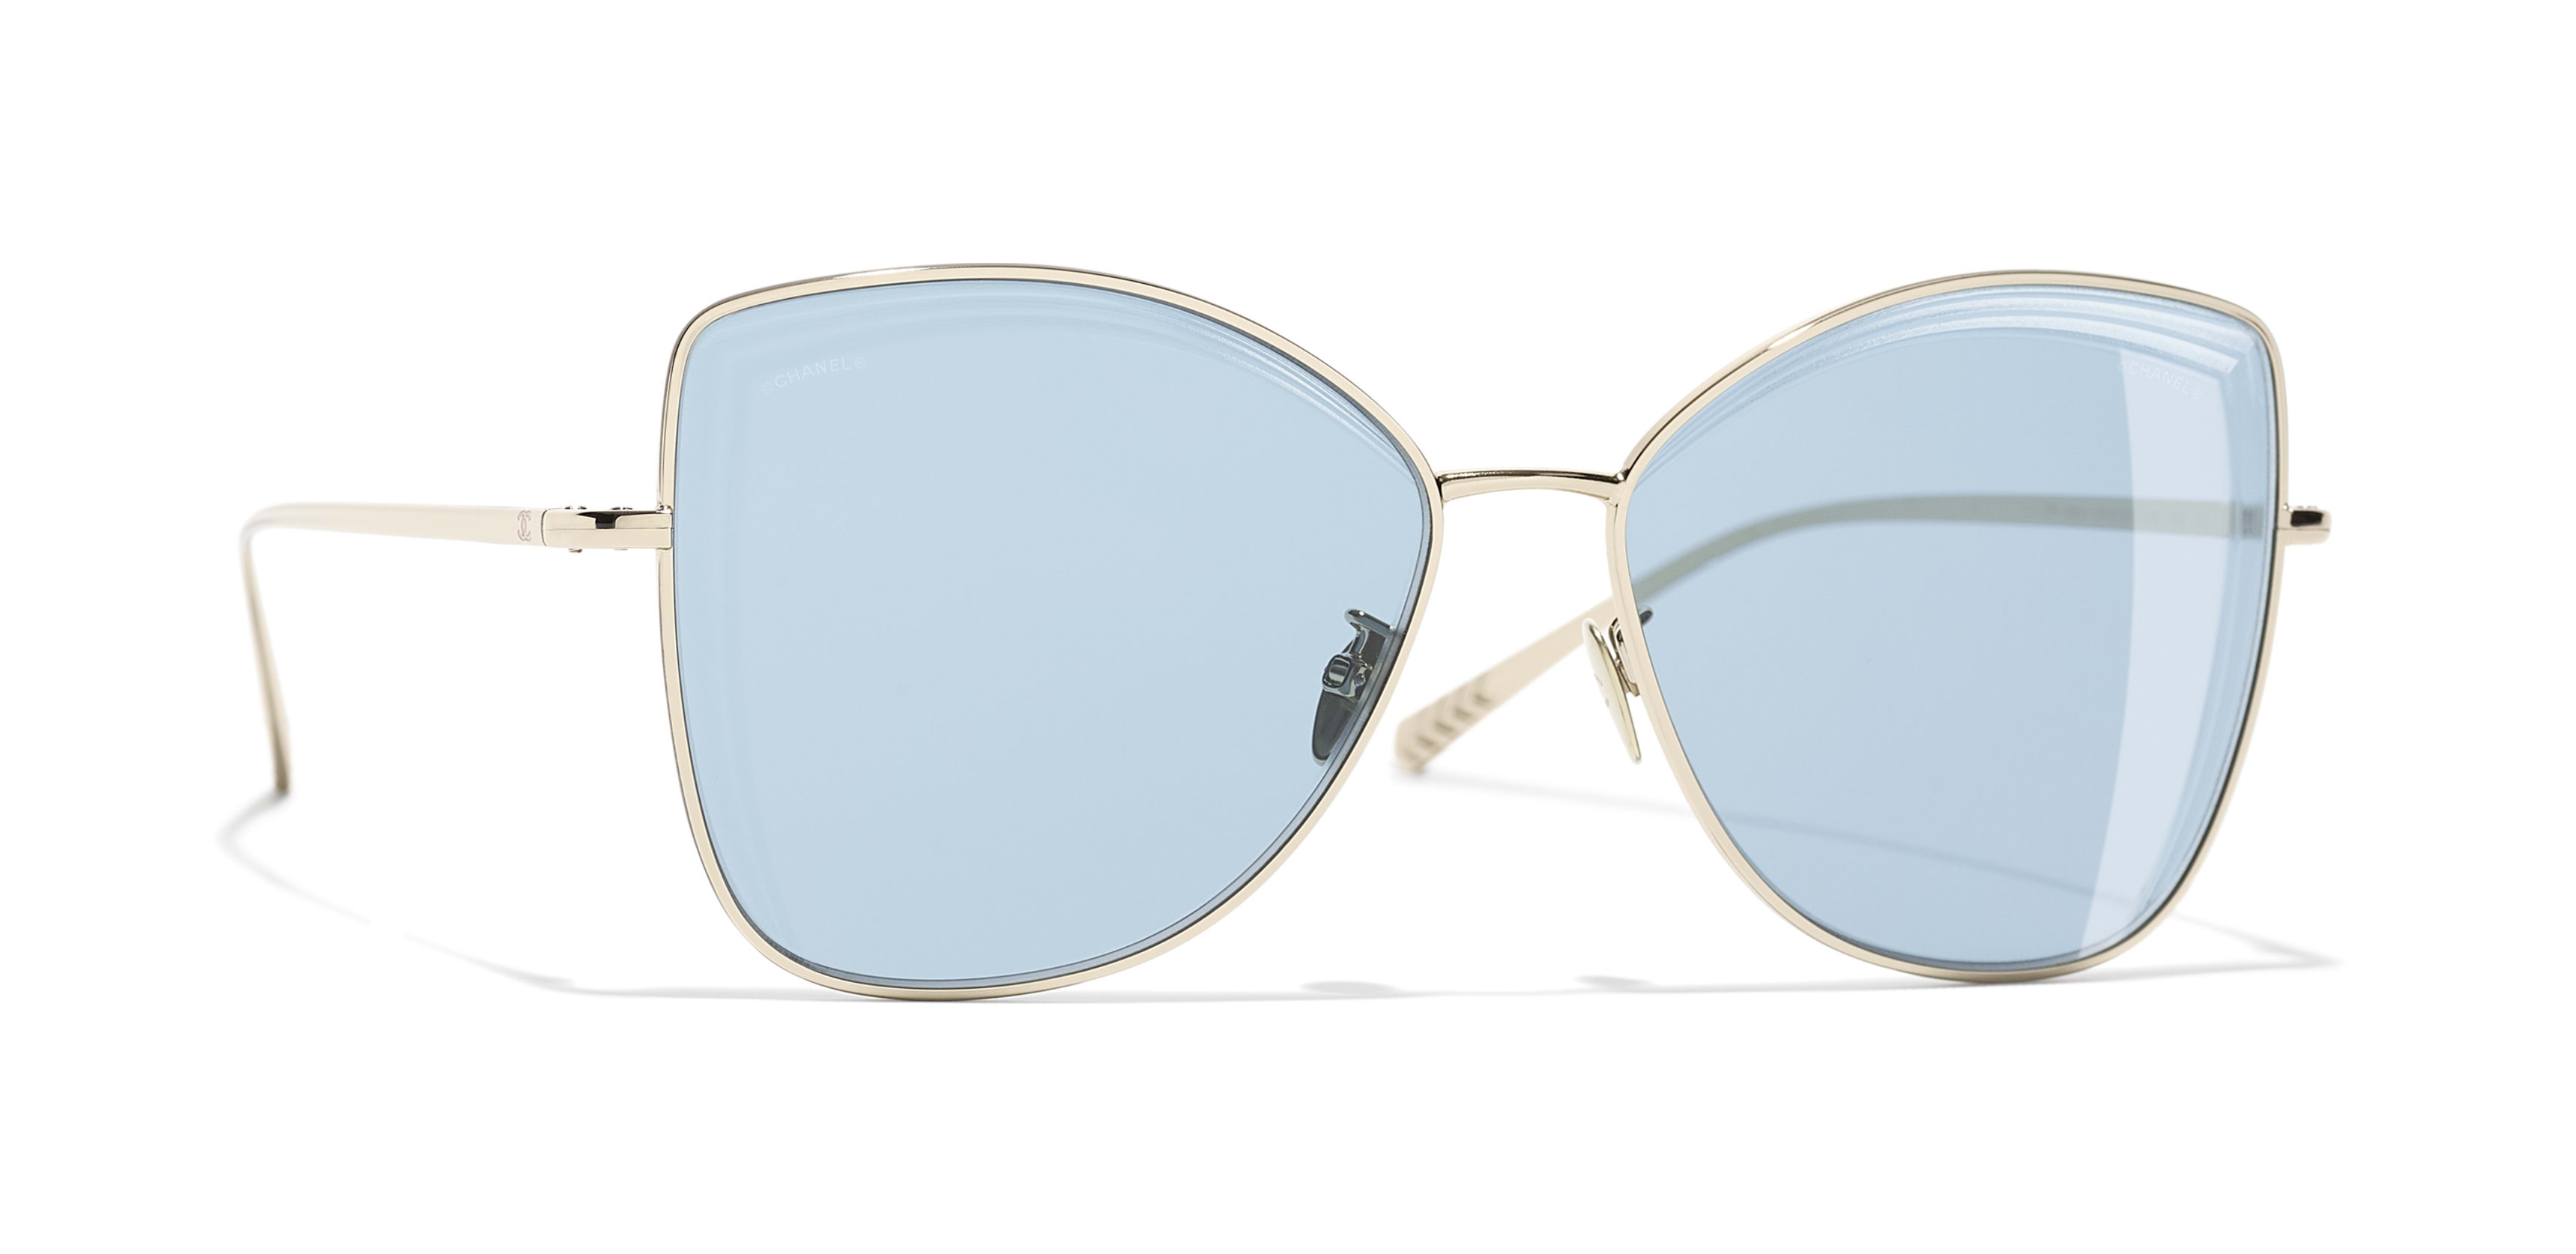 Chanel - Butterfly Sunglasses - Gold Light Blue - Chanel Eyewear - Avvenice